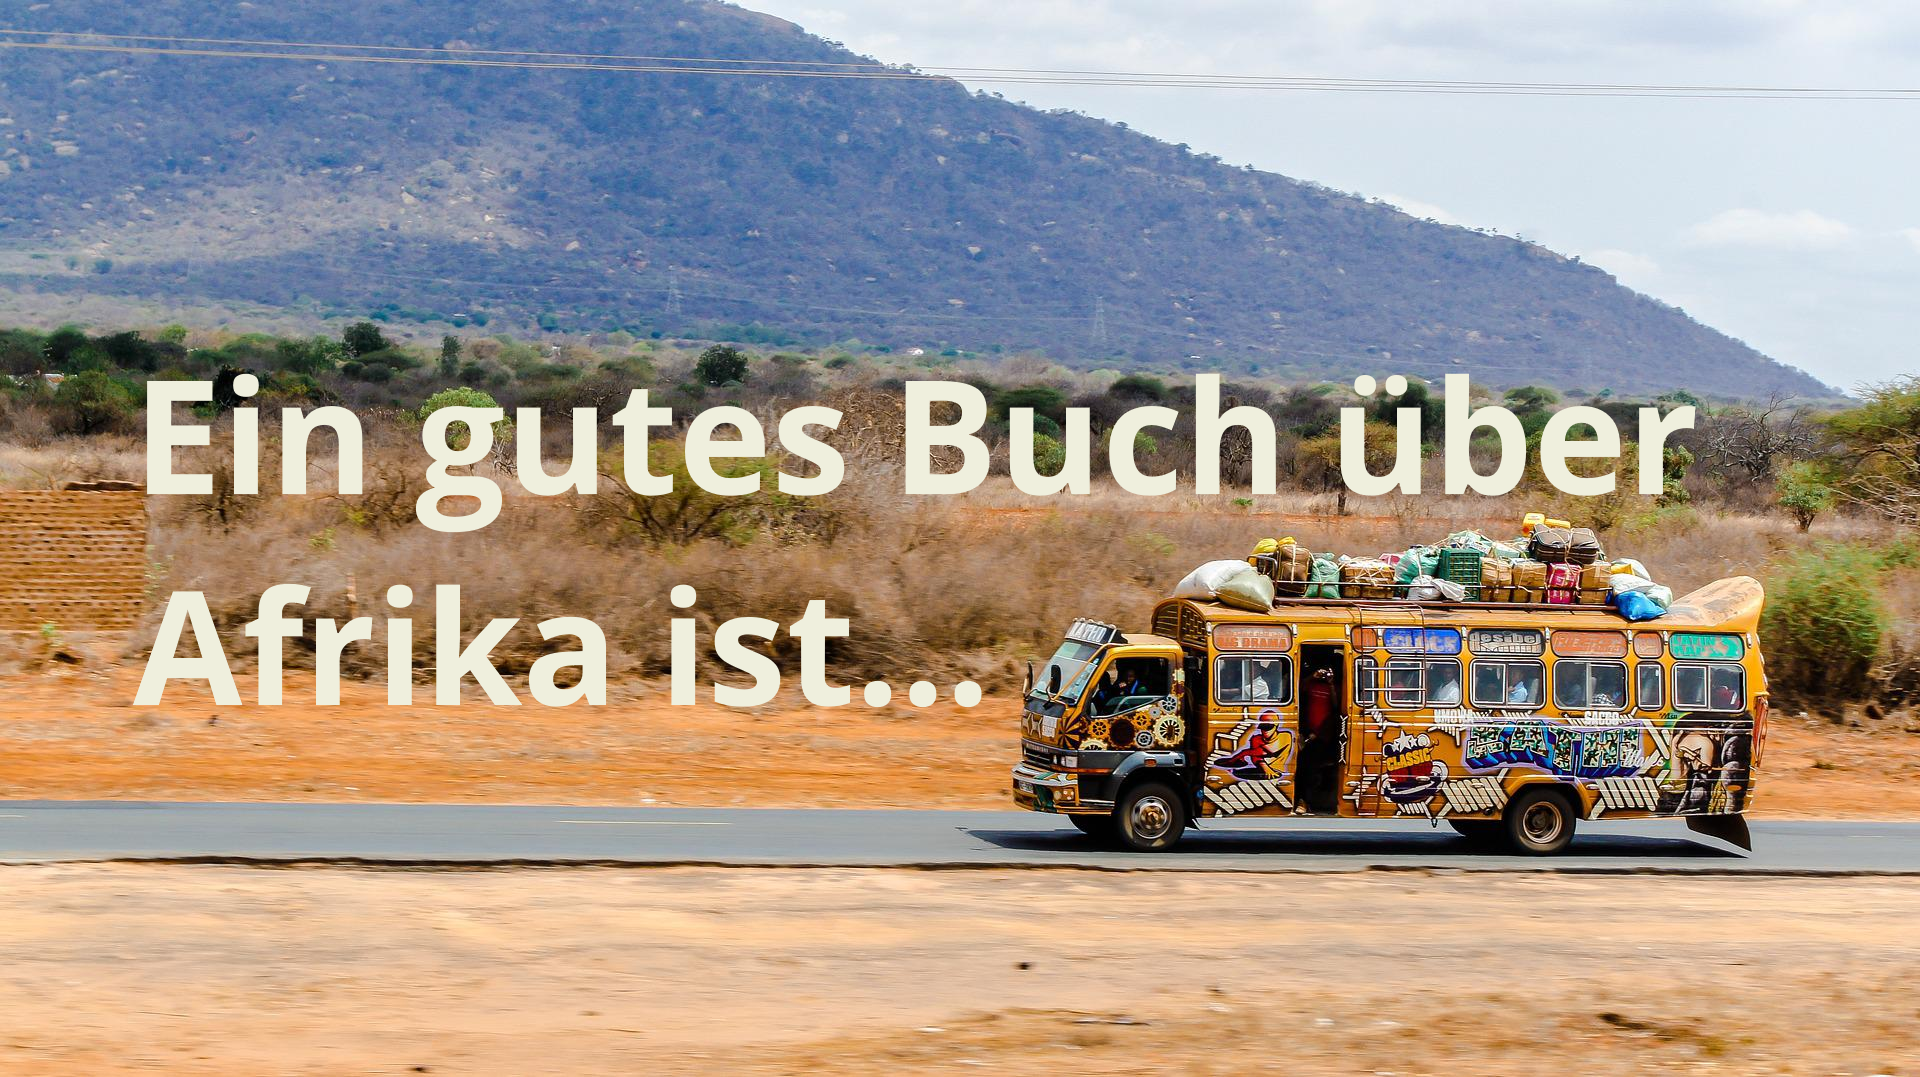 Ein gutes Buch über Afrika ist Schriftzug nahe Bus in afrikanischer Wüste